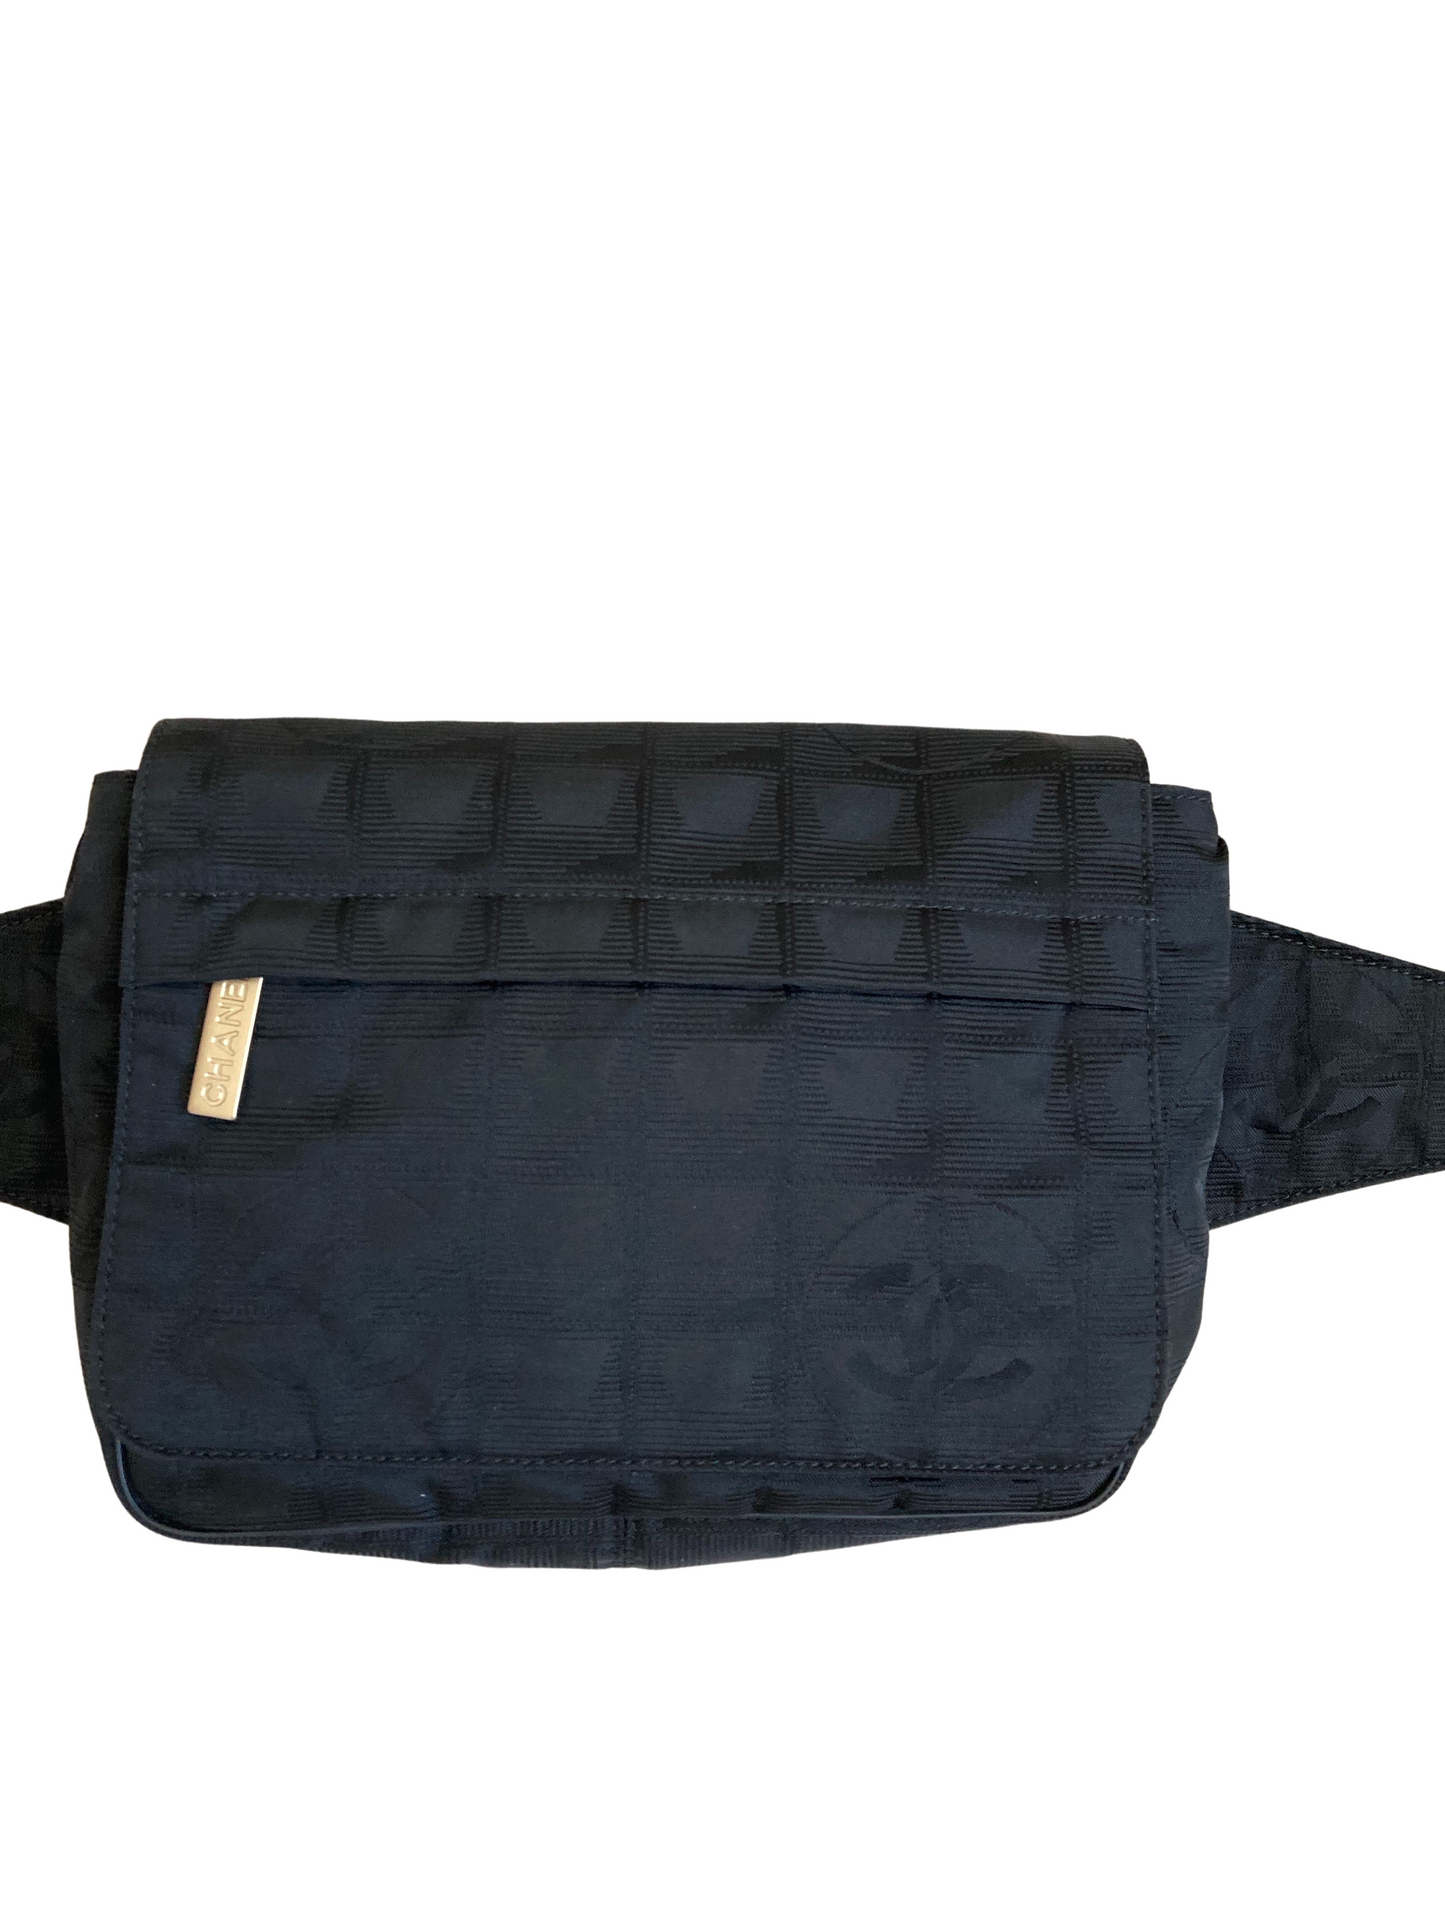 Chanel Travel Line Black Nylon Belt Bag – Kawaii Vintage